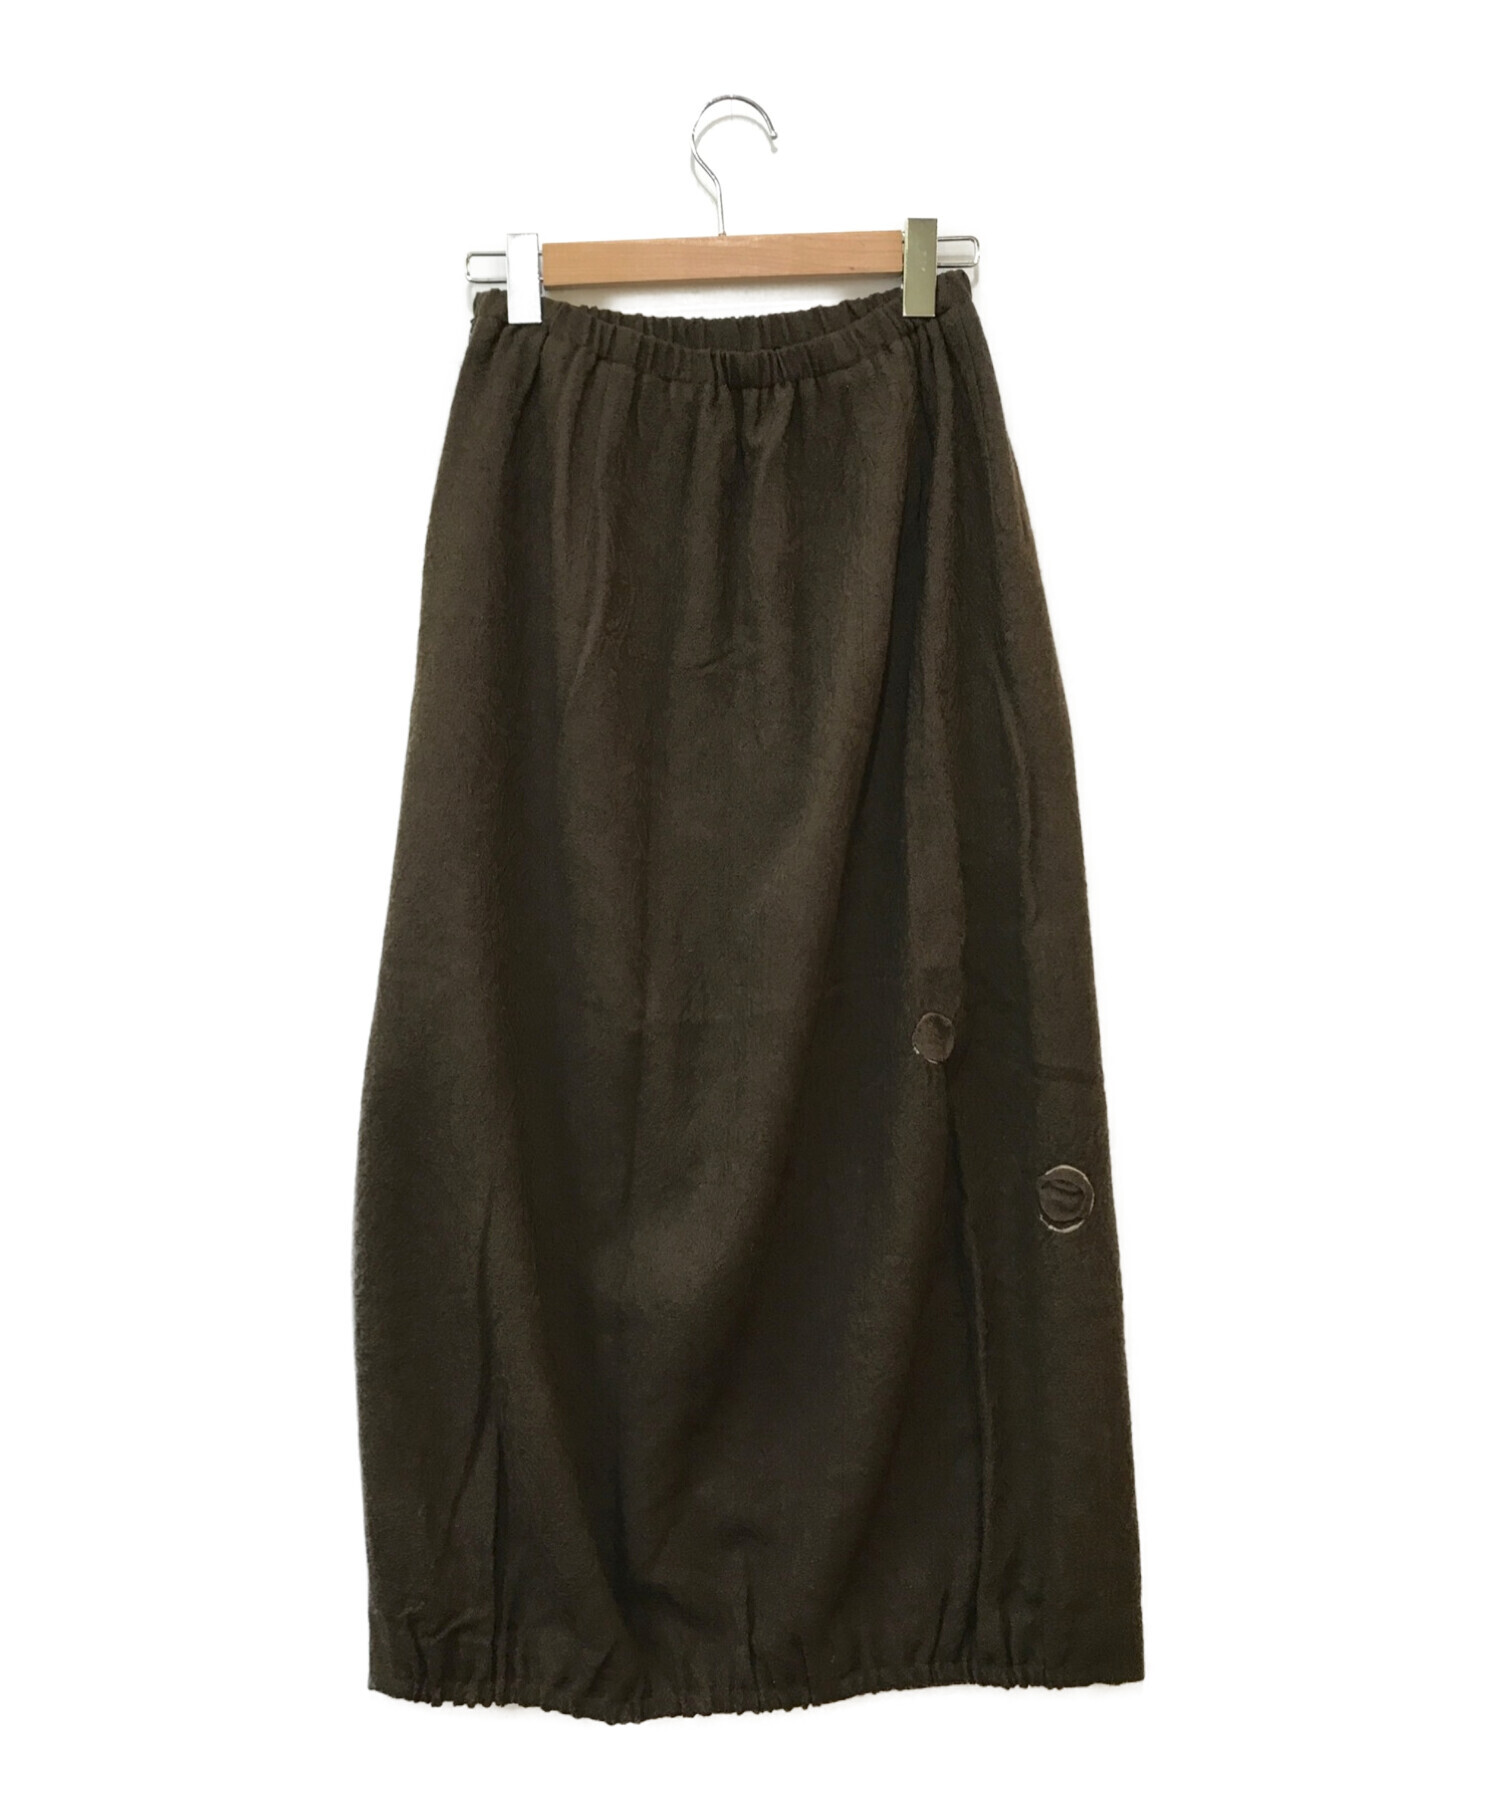 人気商品再入荷 スカート ストライプ 慈雨 スカート 変形デザイン ブラウン レディース